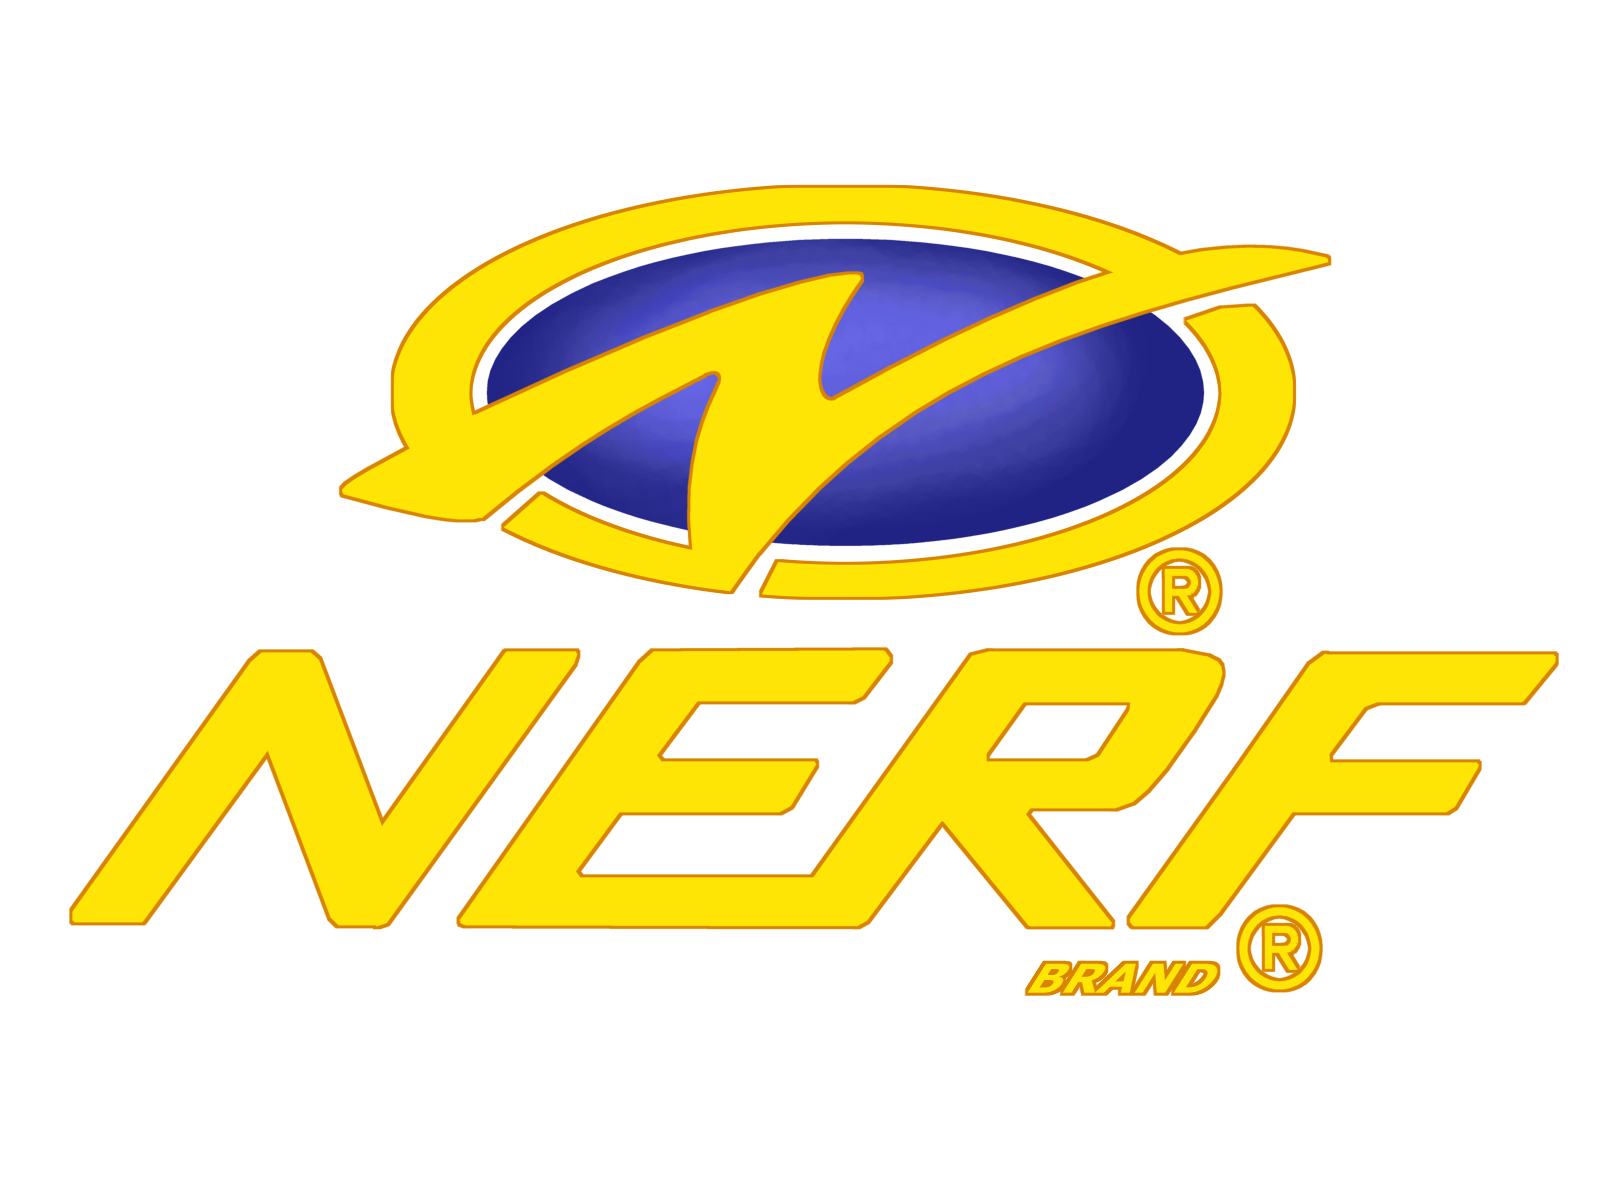 Printable Nerf Logo - Printable Word Searches